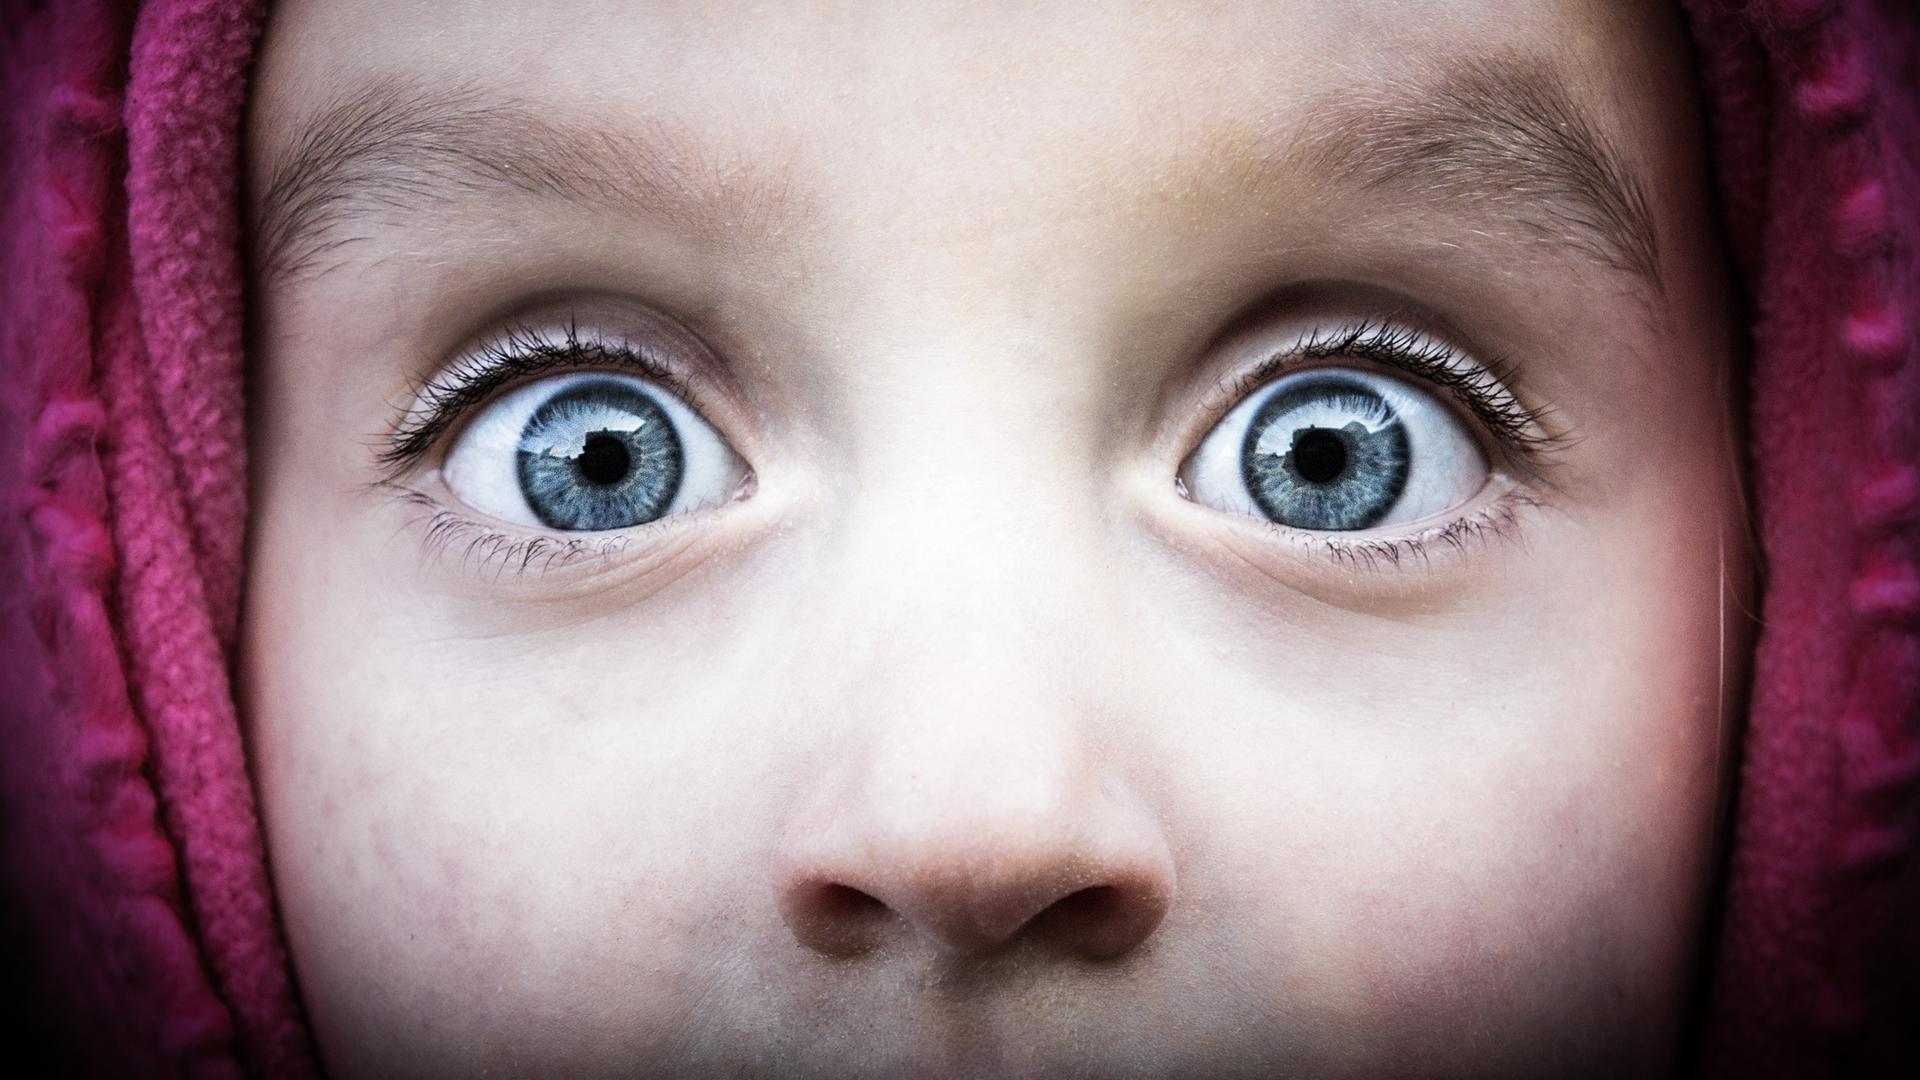 Aufnahme der Augenpartie eines Kindes mit weit aufgerissenen Augen, die grosses Erstaunenausdrücken.